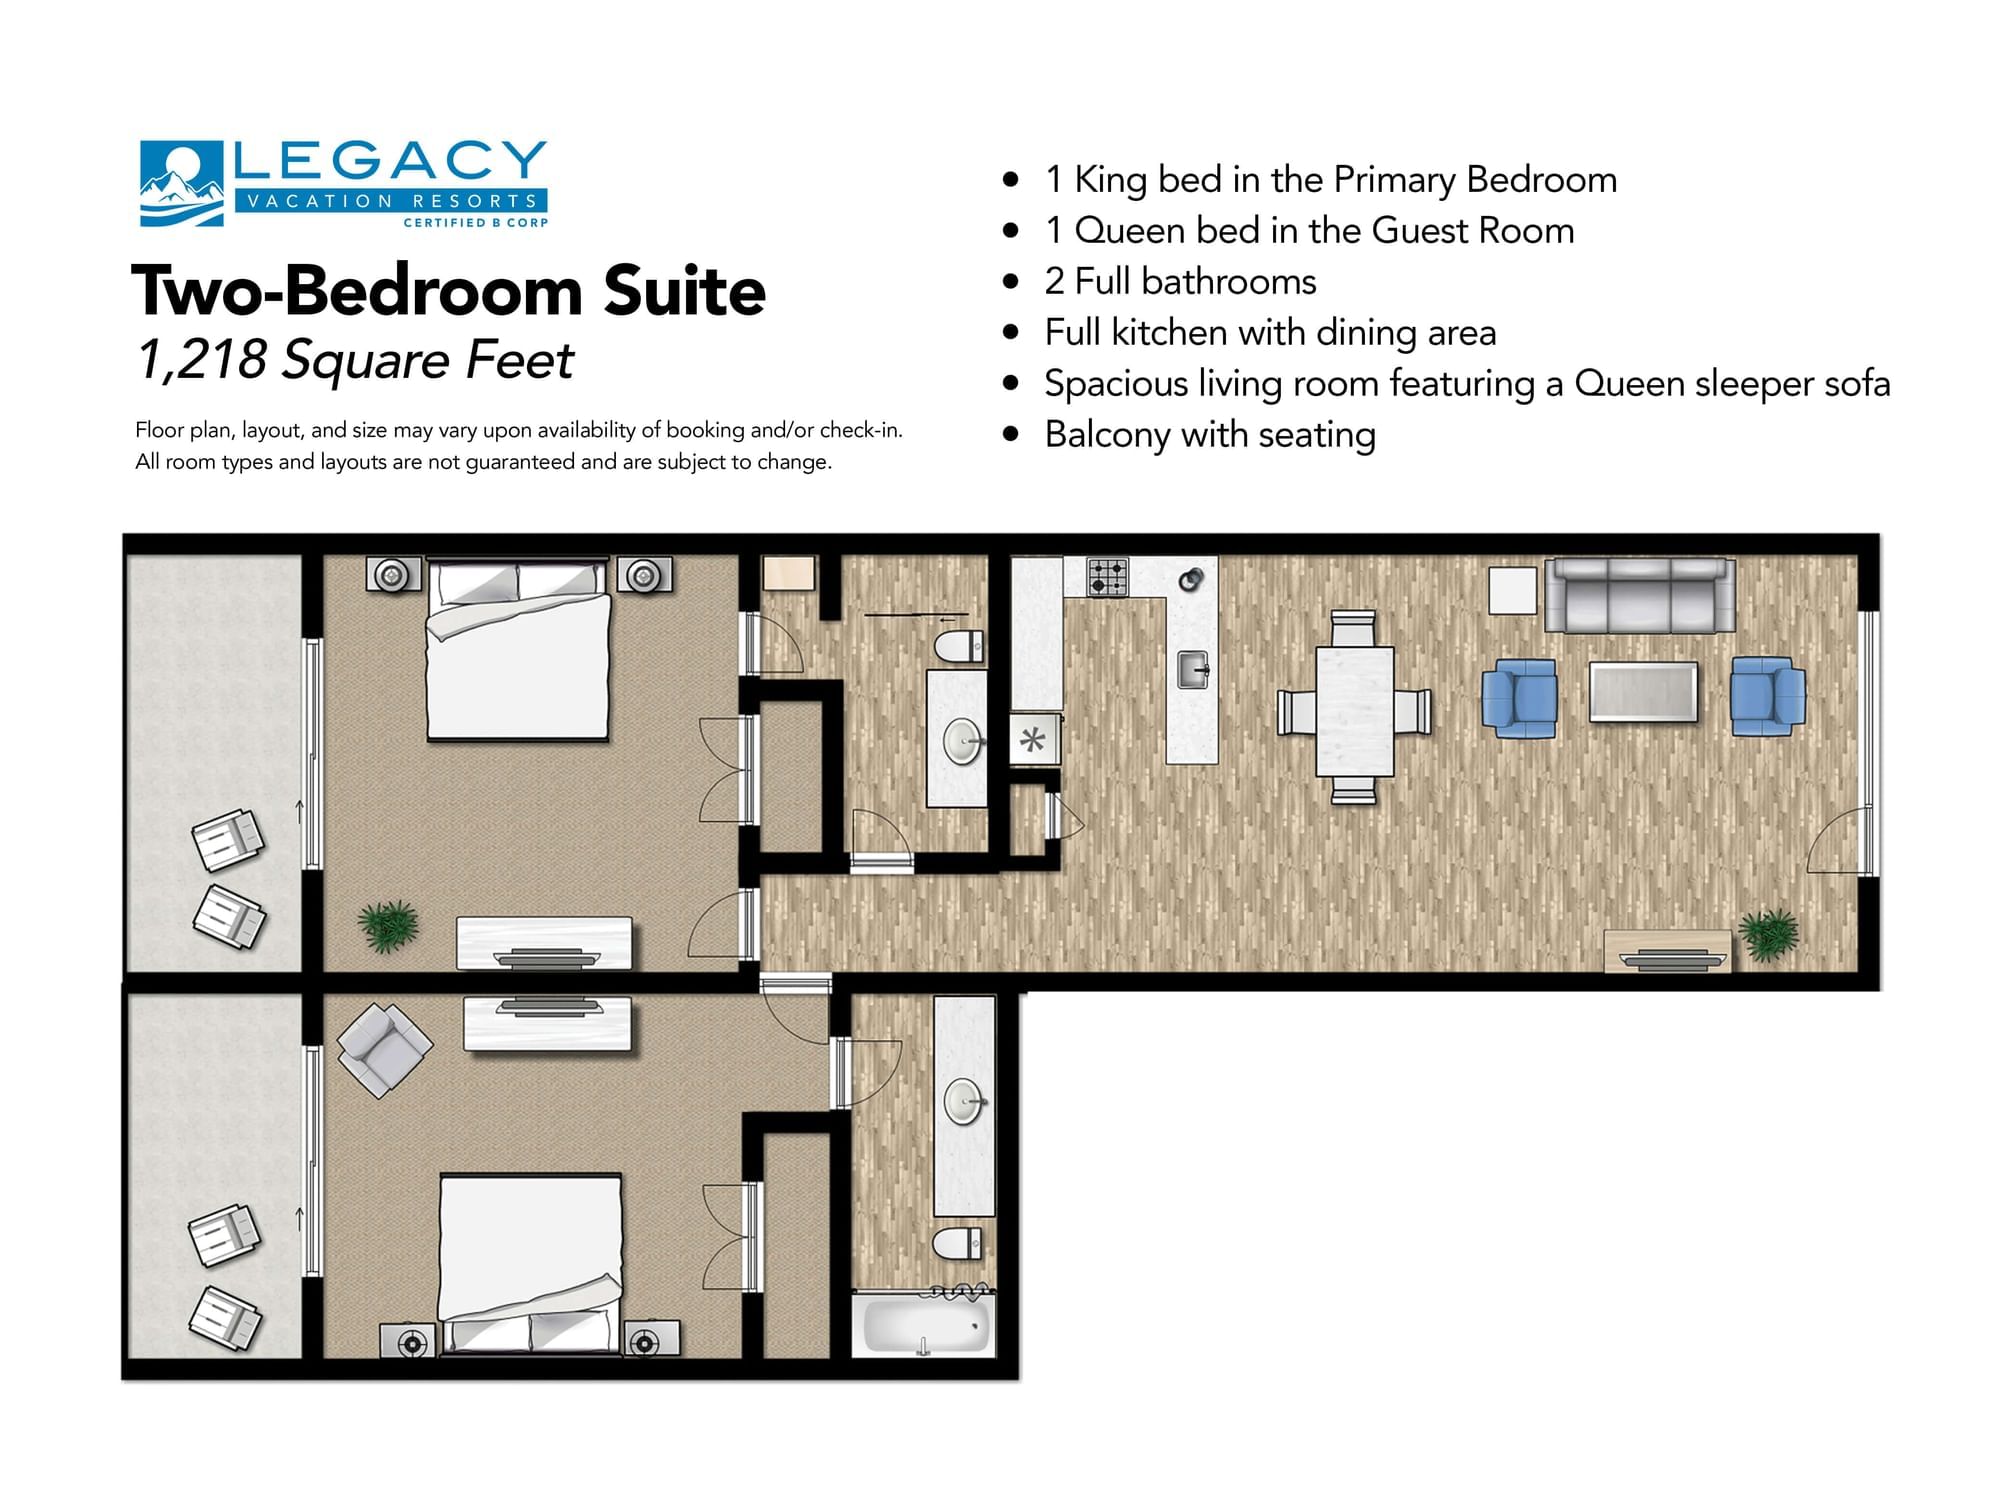 Deluxe One-Bedroom Suite | Hotel room design plan, Hotel room plan, Hotel  room design